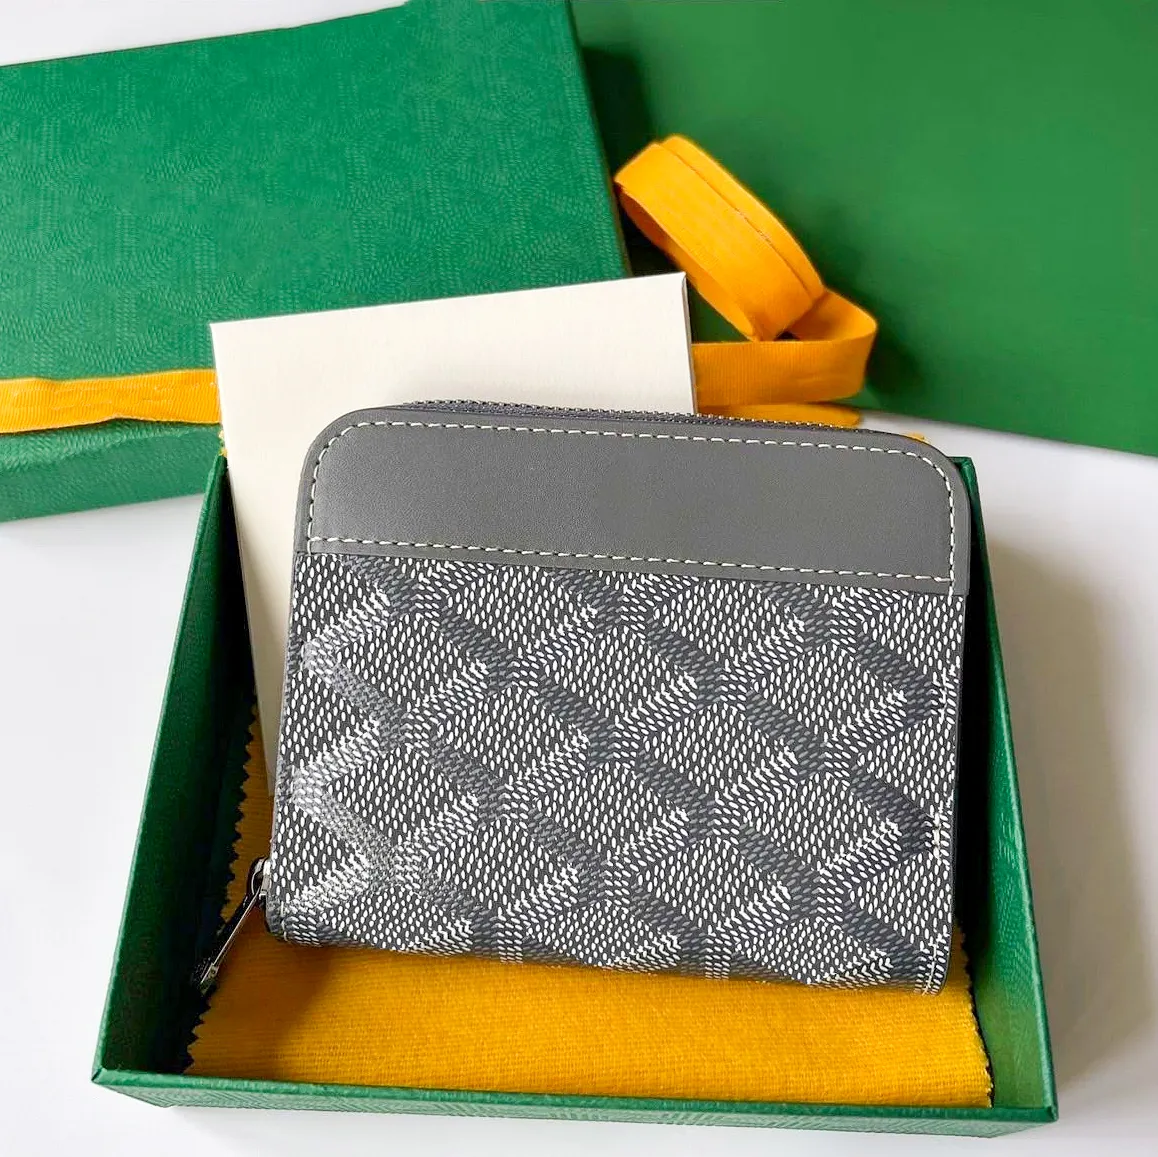 Madeni para fermuar matignon lüks 10a tasarımcı anahtar cüzdan kart tutucular bayanlar erkek kart kasası anahtarlık klasik pasaport sahipleri deri anahtar çantası cep organizatör